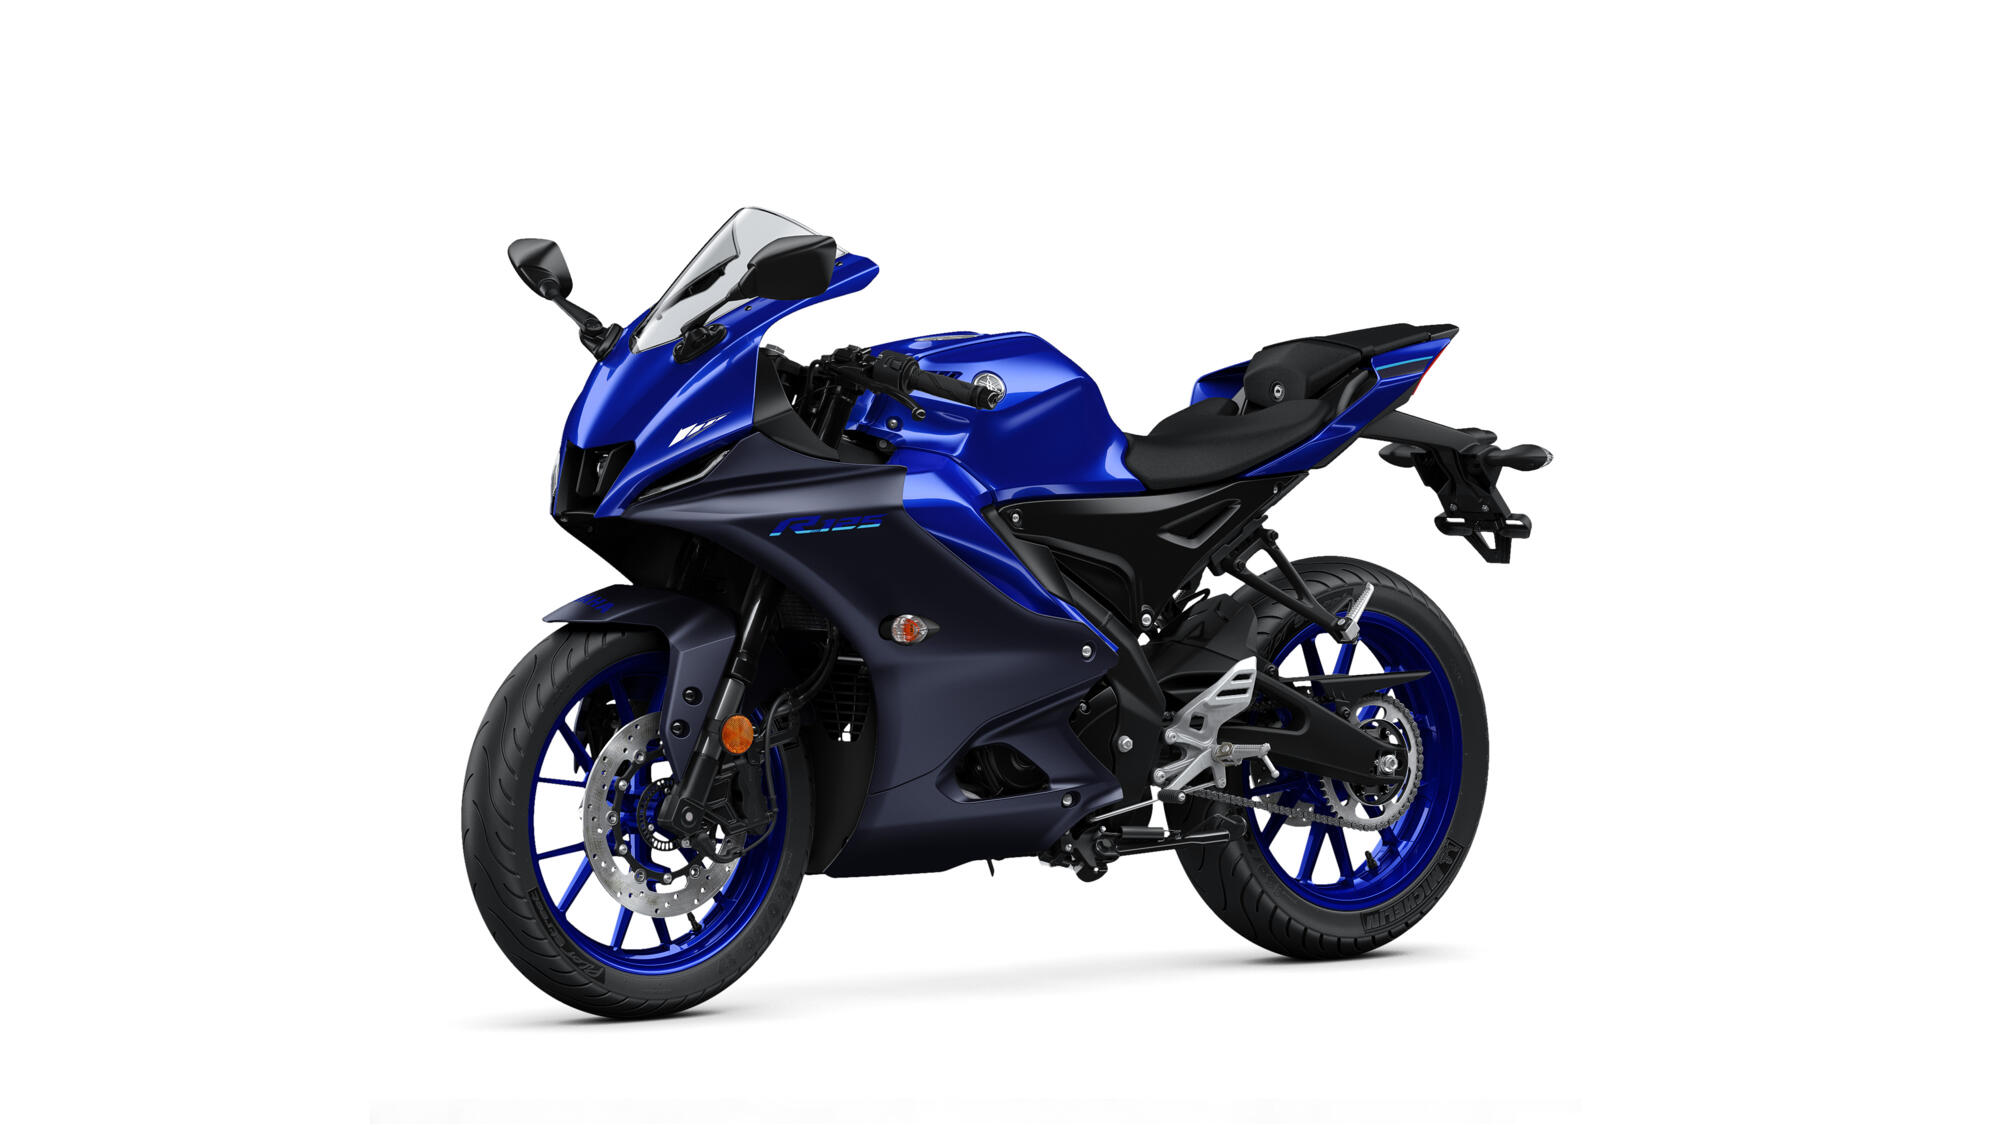 R125 - Motorcycles - Yamaha Motor